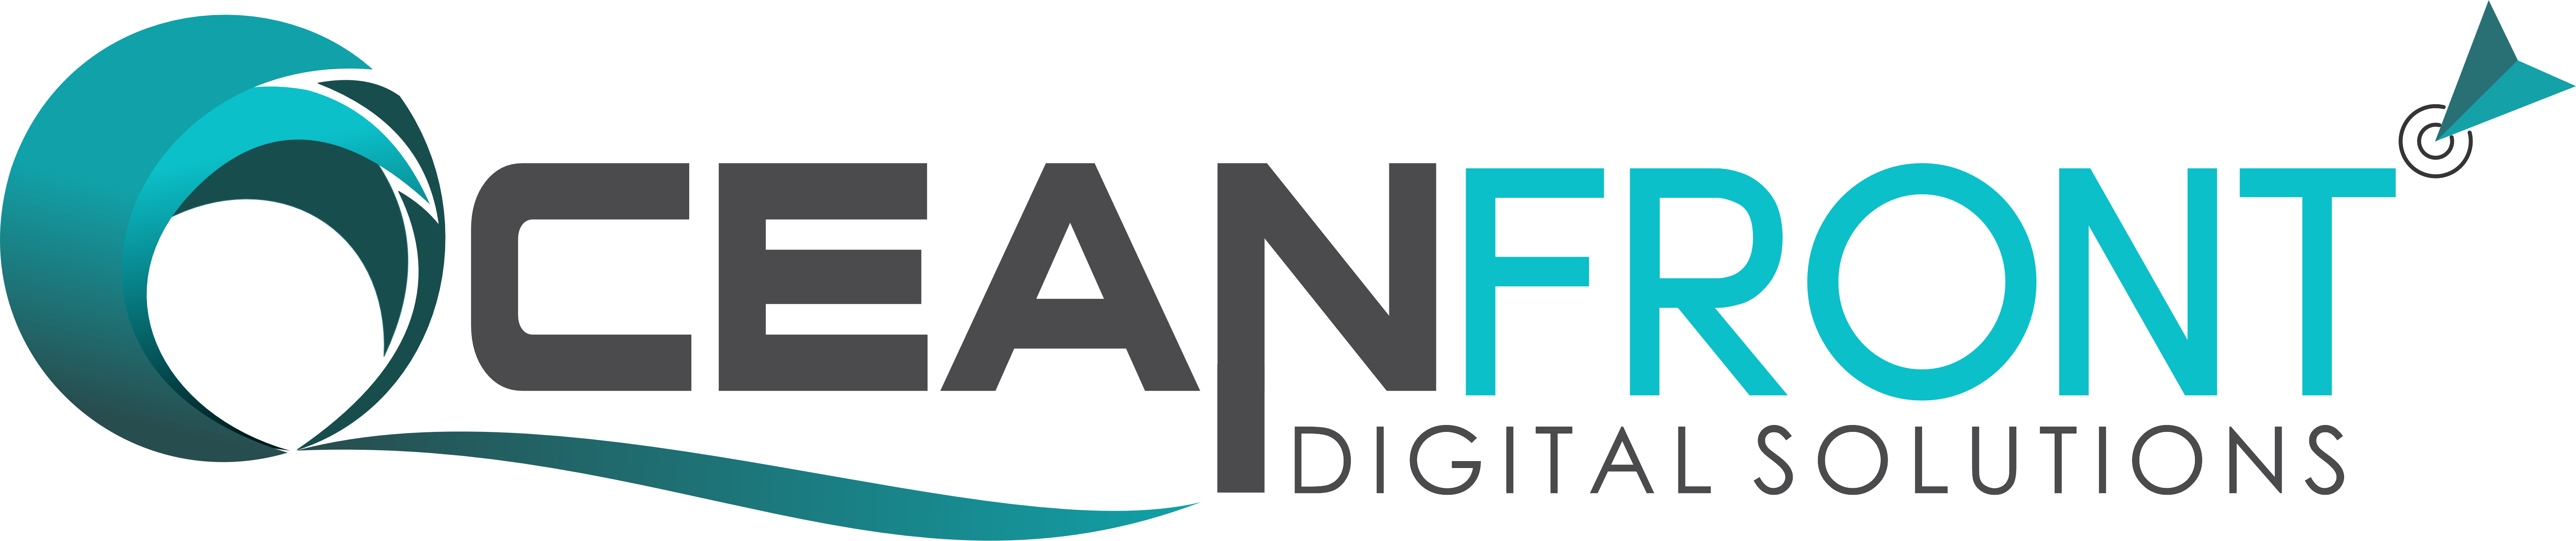 Oceanfront Digital Solutions